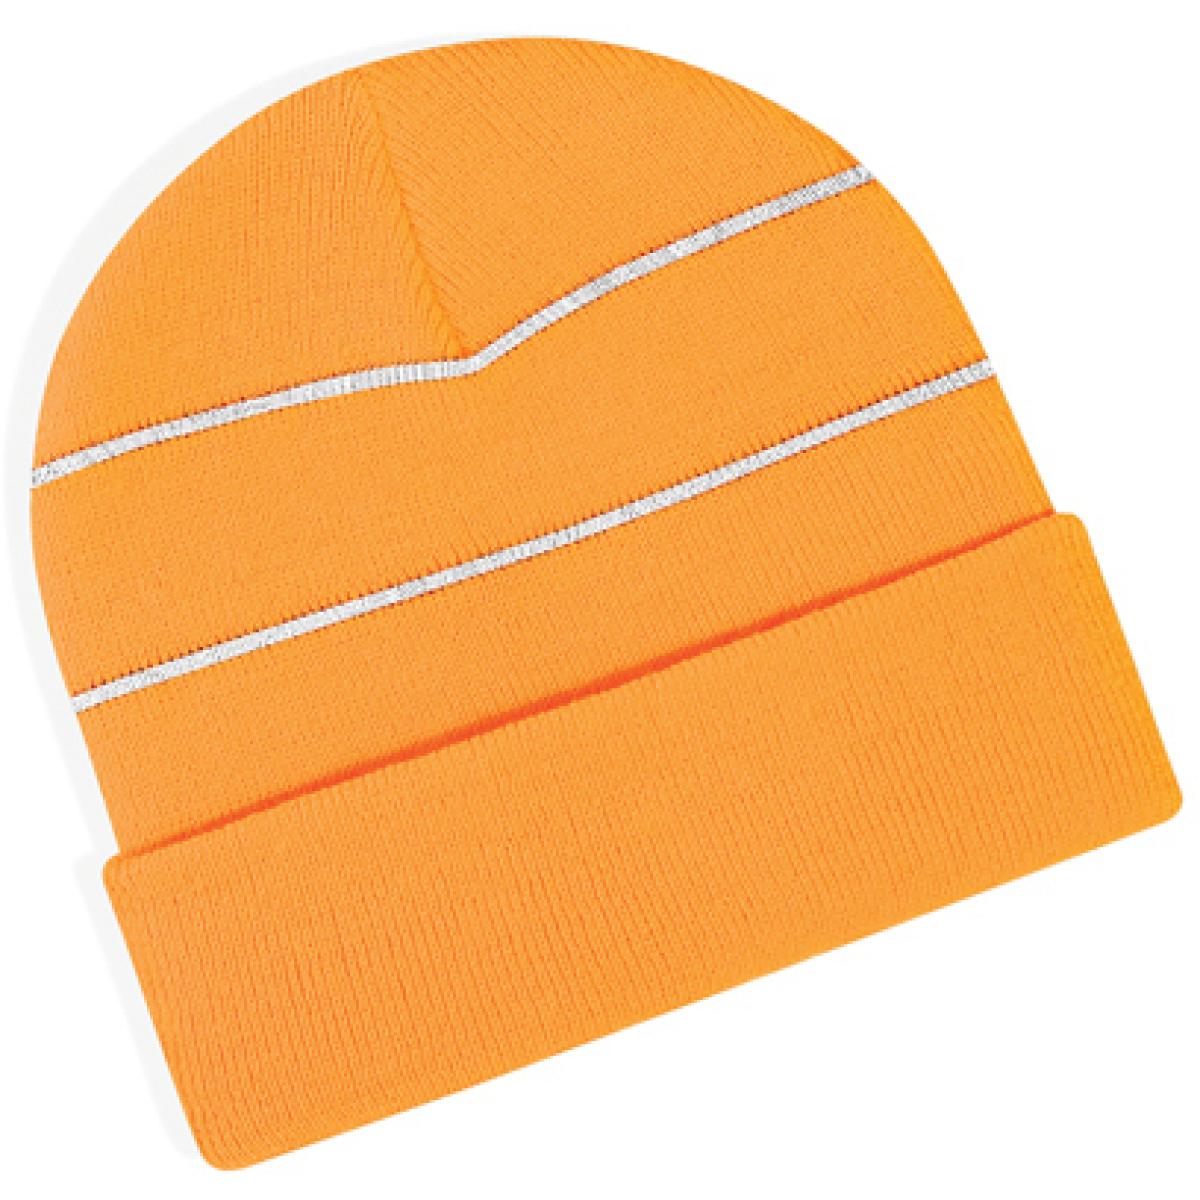 Hersteller: Beechfield Herstellernummer: B42 Artikelbezeichnung: Enhanced-Viz Beanie Wintermütze Farbe: Fluorescent Orange